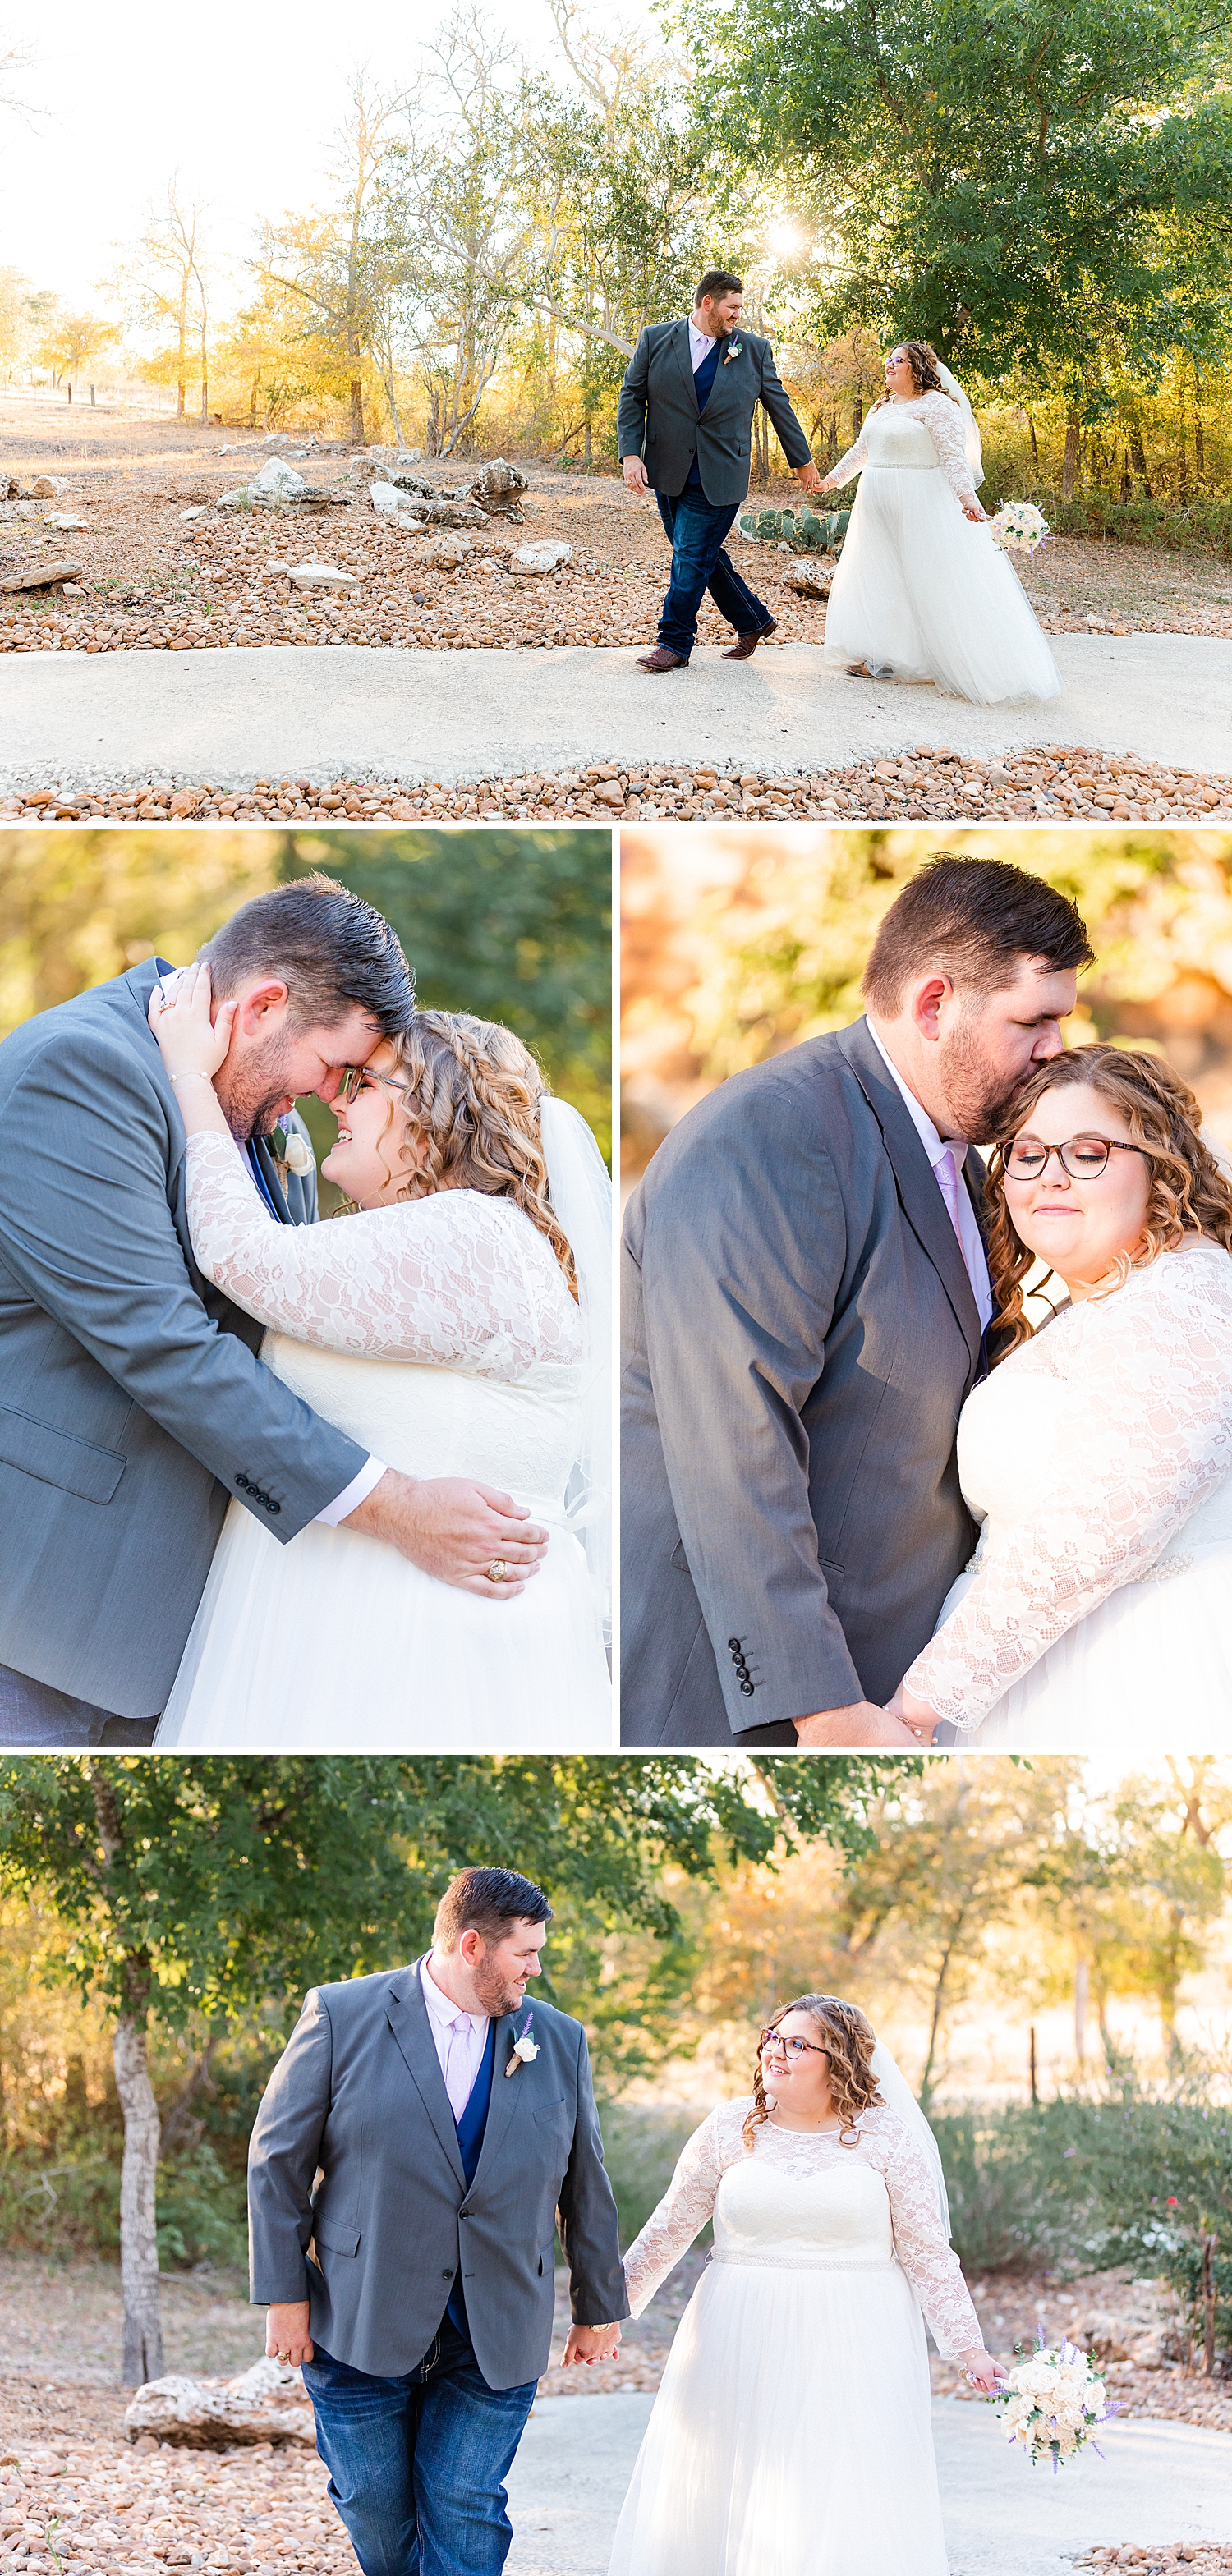 Geronimo-Oaks-Fall-Wedding-Seguin-Texas-Lavendar-Navy-Theme-Carly-Barton-Photography_0054.jpg